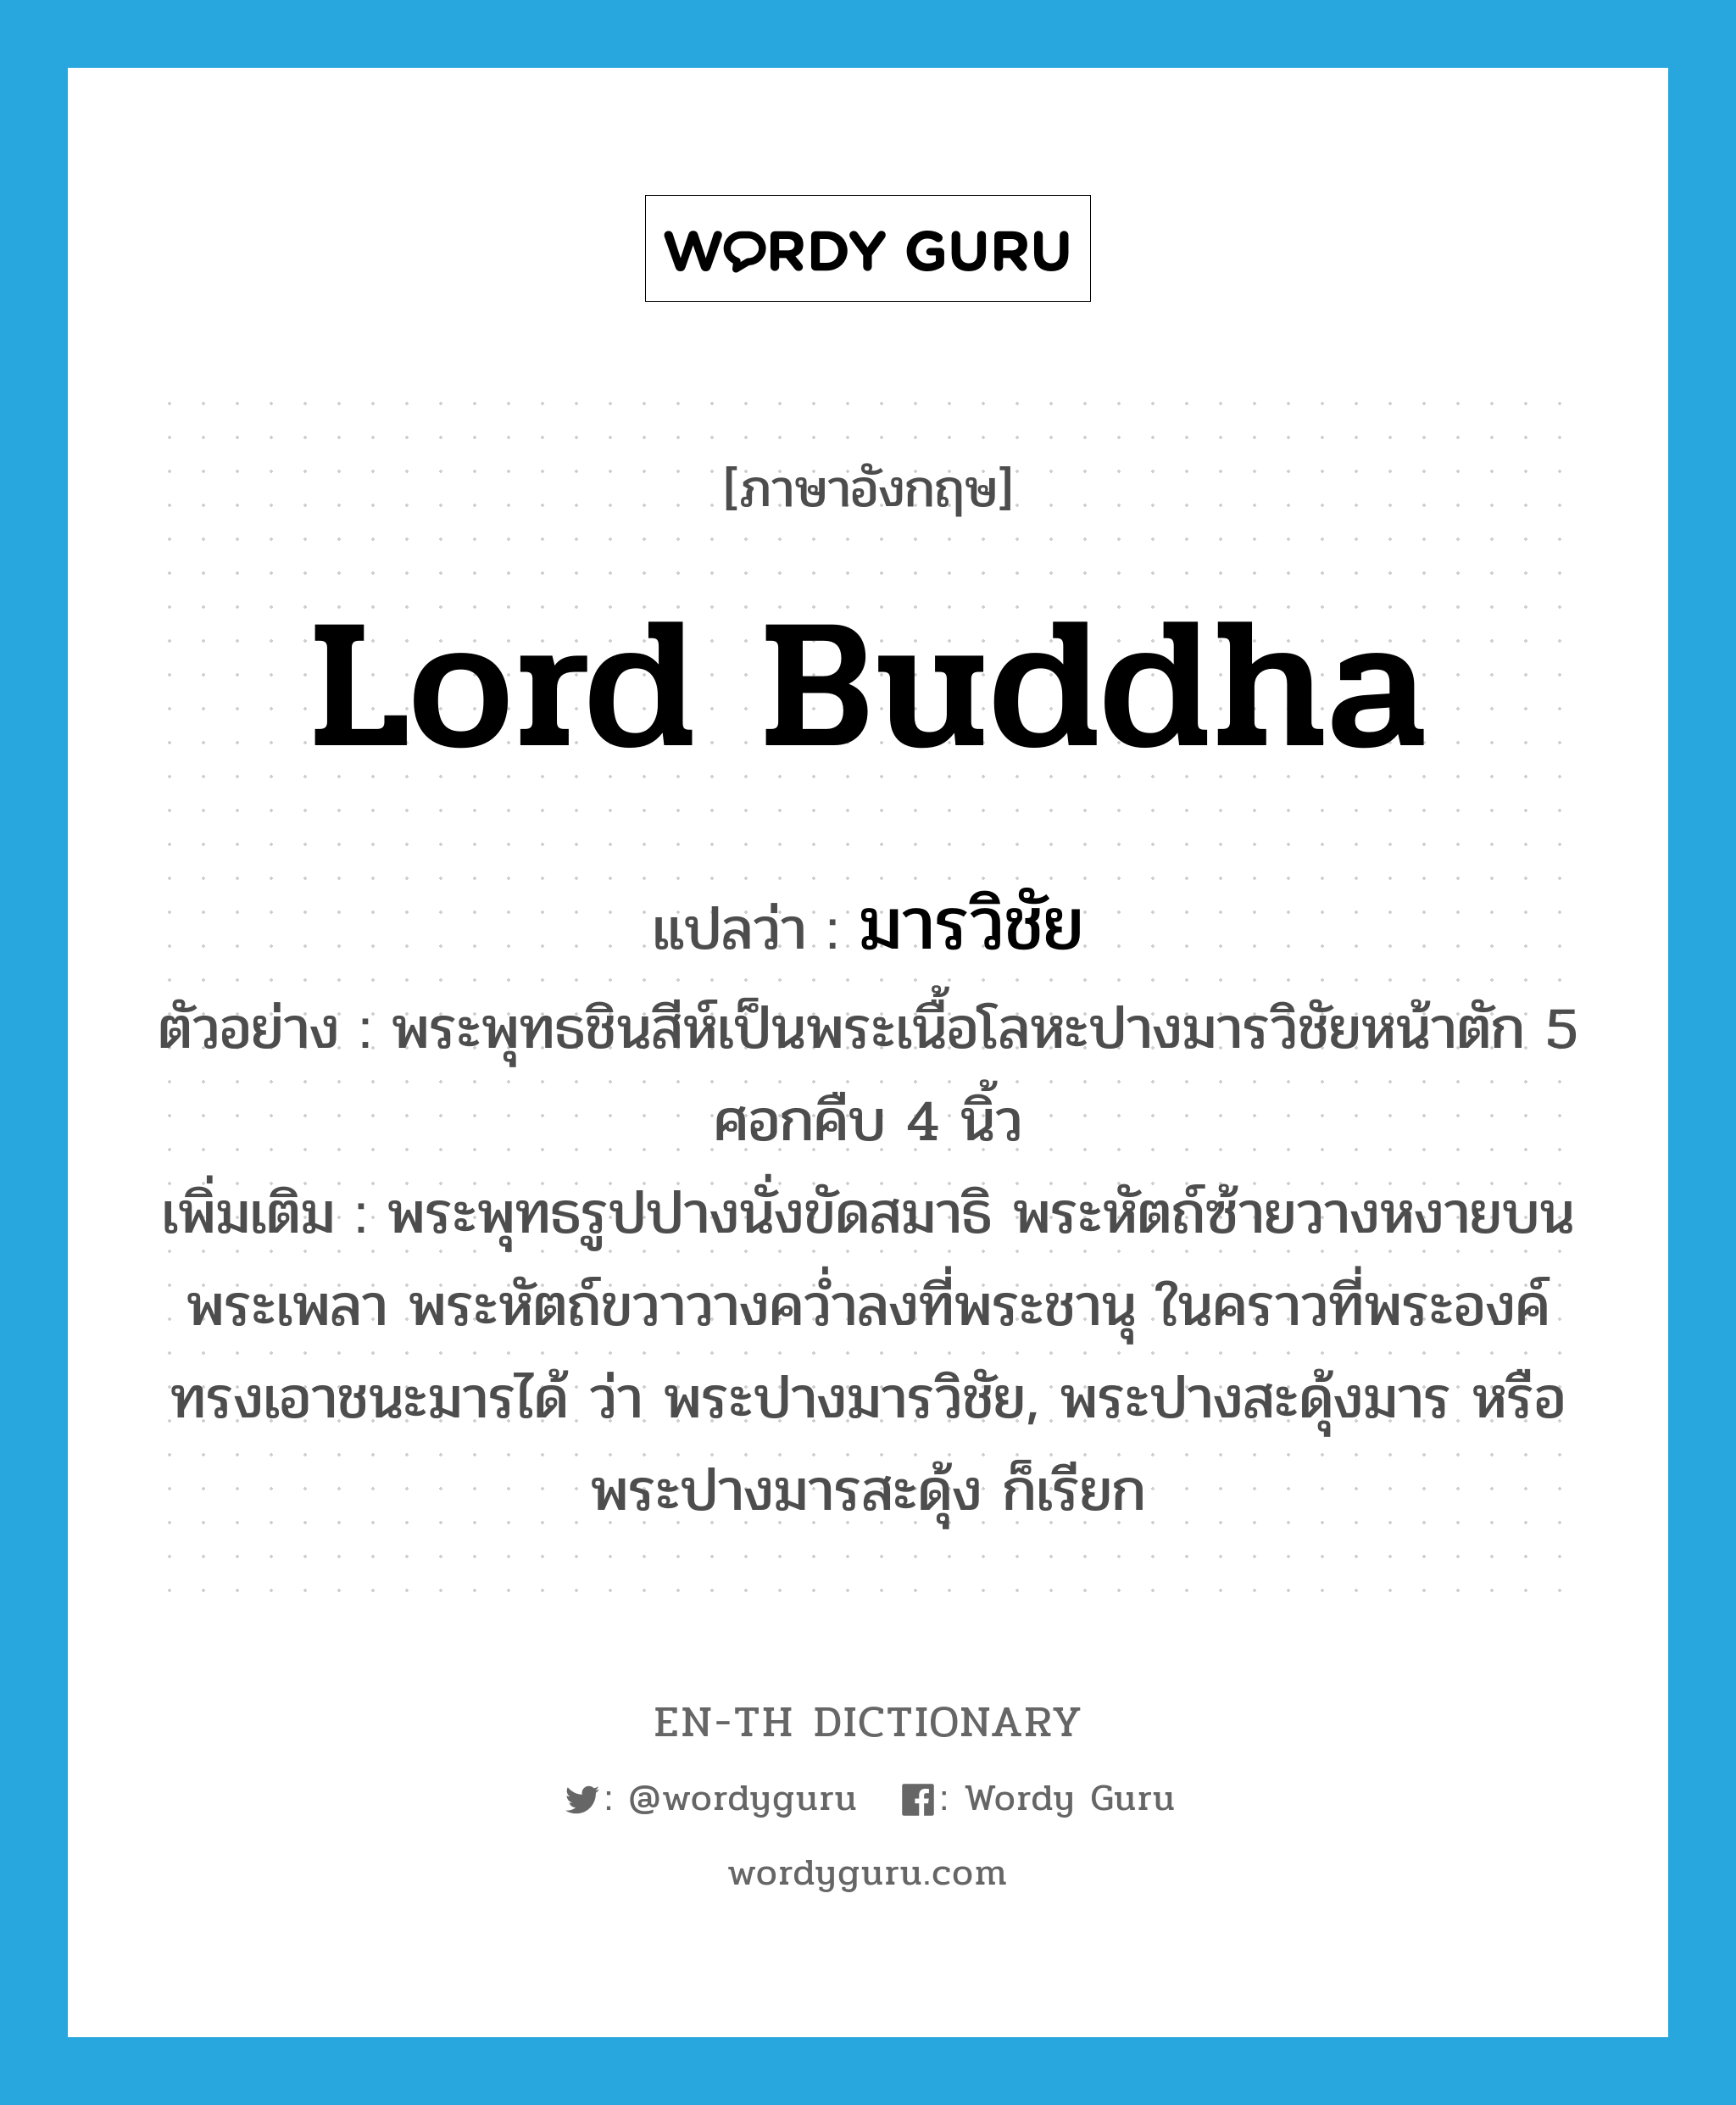 Lord Buddha แปลว่า?, คำศัพท์ภาษาอังกฤษ Lord Buddha แปลว่า มารวิชัย ประเภท N ตัวอย่าง พระพุทธชินสีห์เป็นพระเนื้อโลหะปางมารวิชัยหน้าตัก 5 ศอกคืบ 4 นิ้ว เพิ่มเติม พระพุทธรูปปางนั่งขัดสมาธิ พระหัตถ์ซ้ายวางหงายบนพระเพลา พระหัตถ์ขวาวางคว่ำลงที่พระชานุ ในคราวที่พระองค์ทรงเอาชนะมารได้ ว่า พระปางมารวิชัย, พระปางสะดุ้งมาร หรือ พระปางมารสะดุ้ง ก็เรียก หมวด N